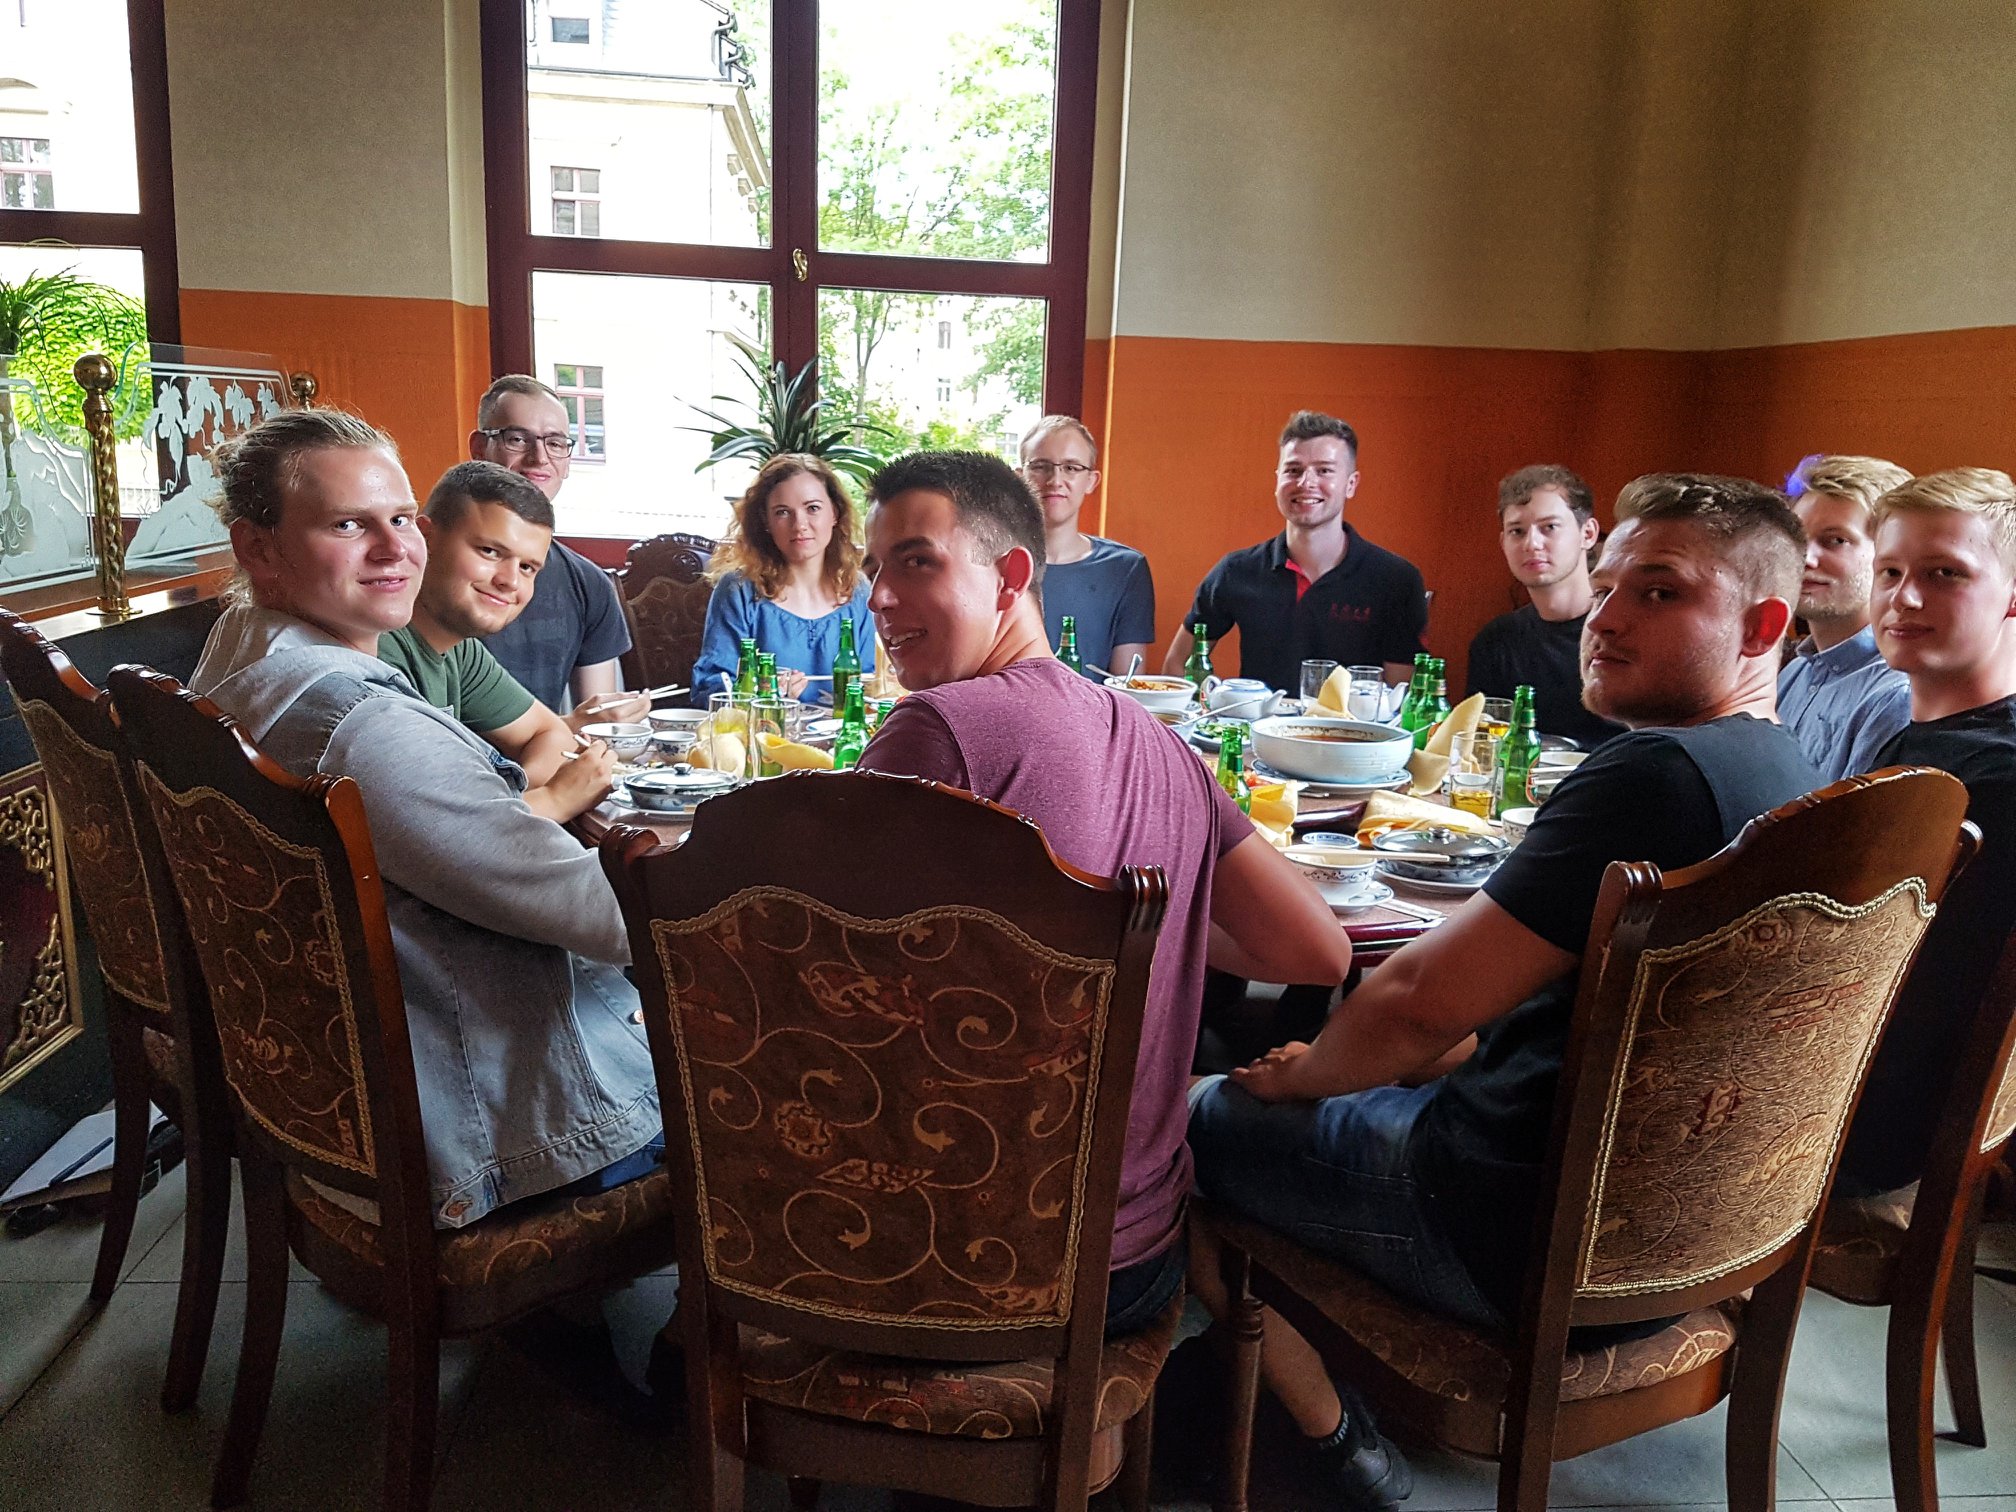 Foto: Studierende sitzen in einem chinesischen Restaurant an einem großen runden Tisch mit Speisen und Getränken.